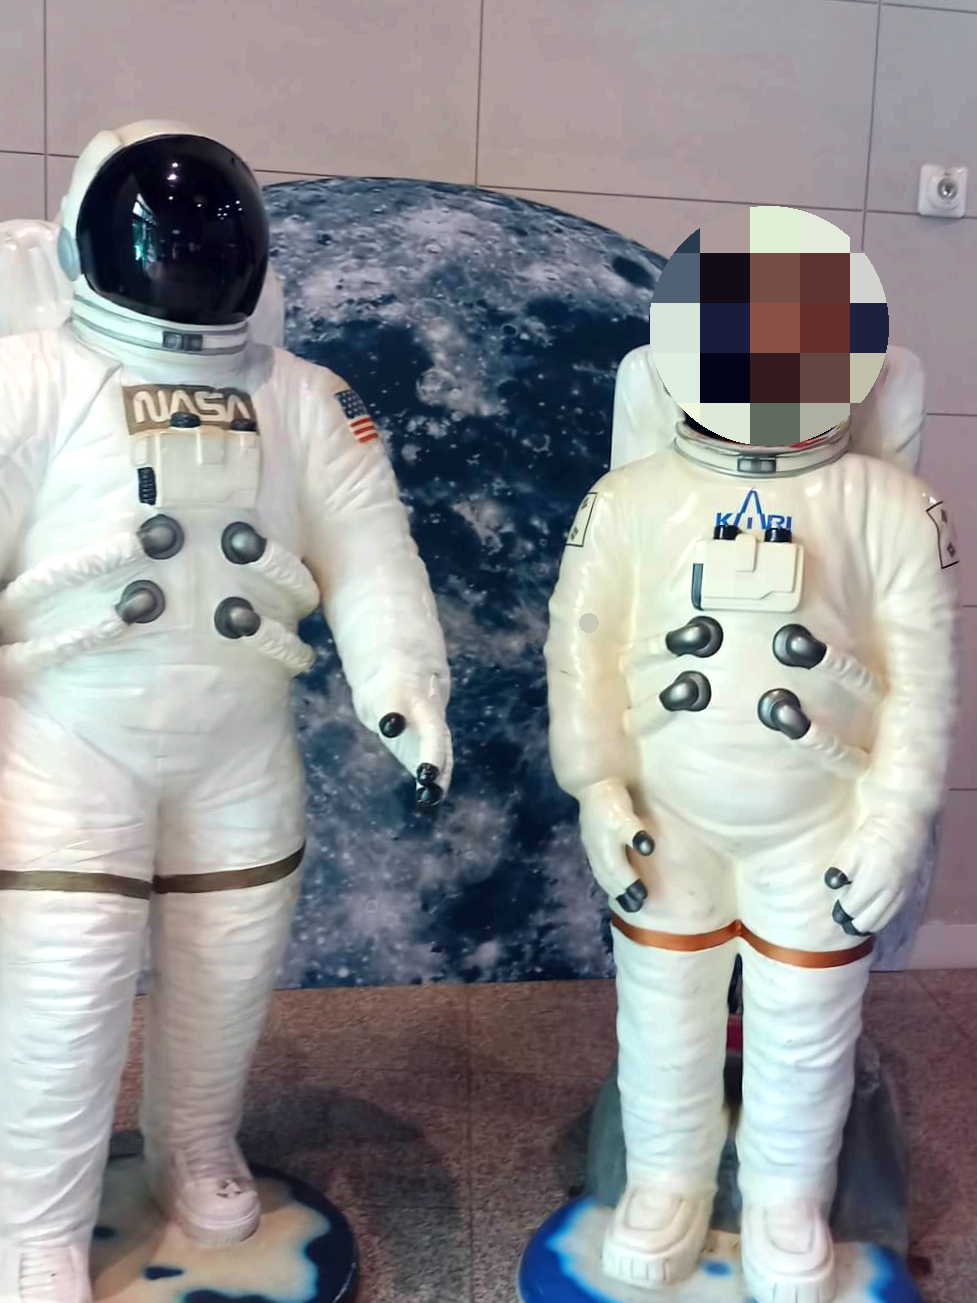 지구-모형-앞에-흰색-옷을-입은-우주인-모형을-찍은-사진